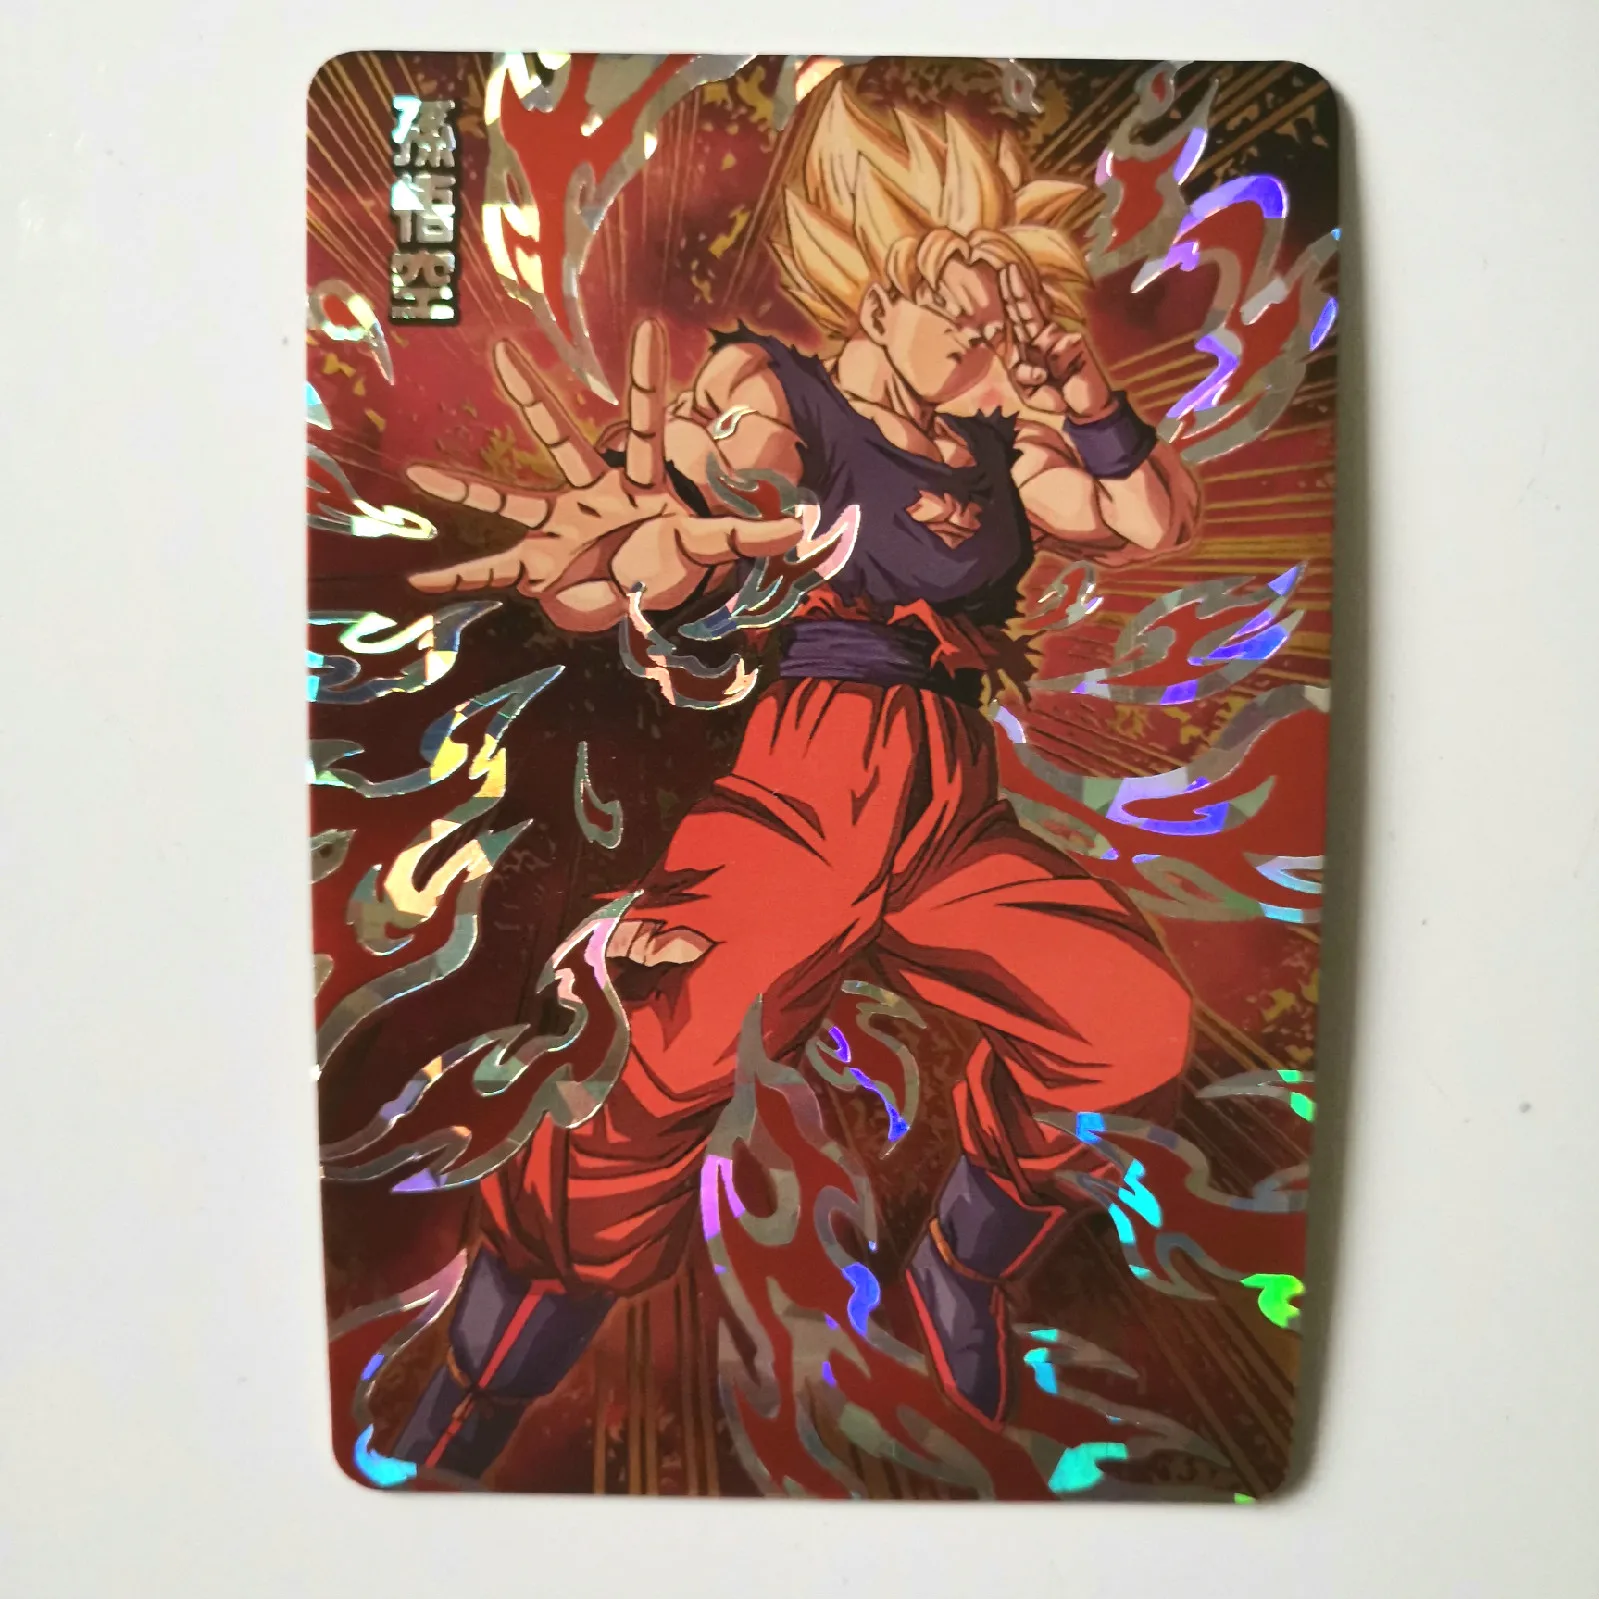 Горячая штамповка Dragon Ball Z Instinct Goku Vegeta Супер Герои битва карточная игра Коллекция аниме-открытки